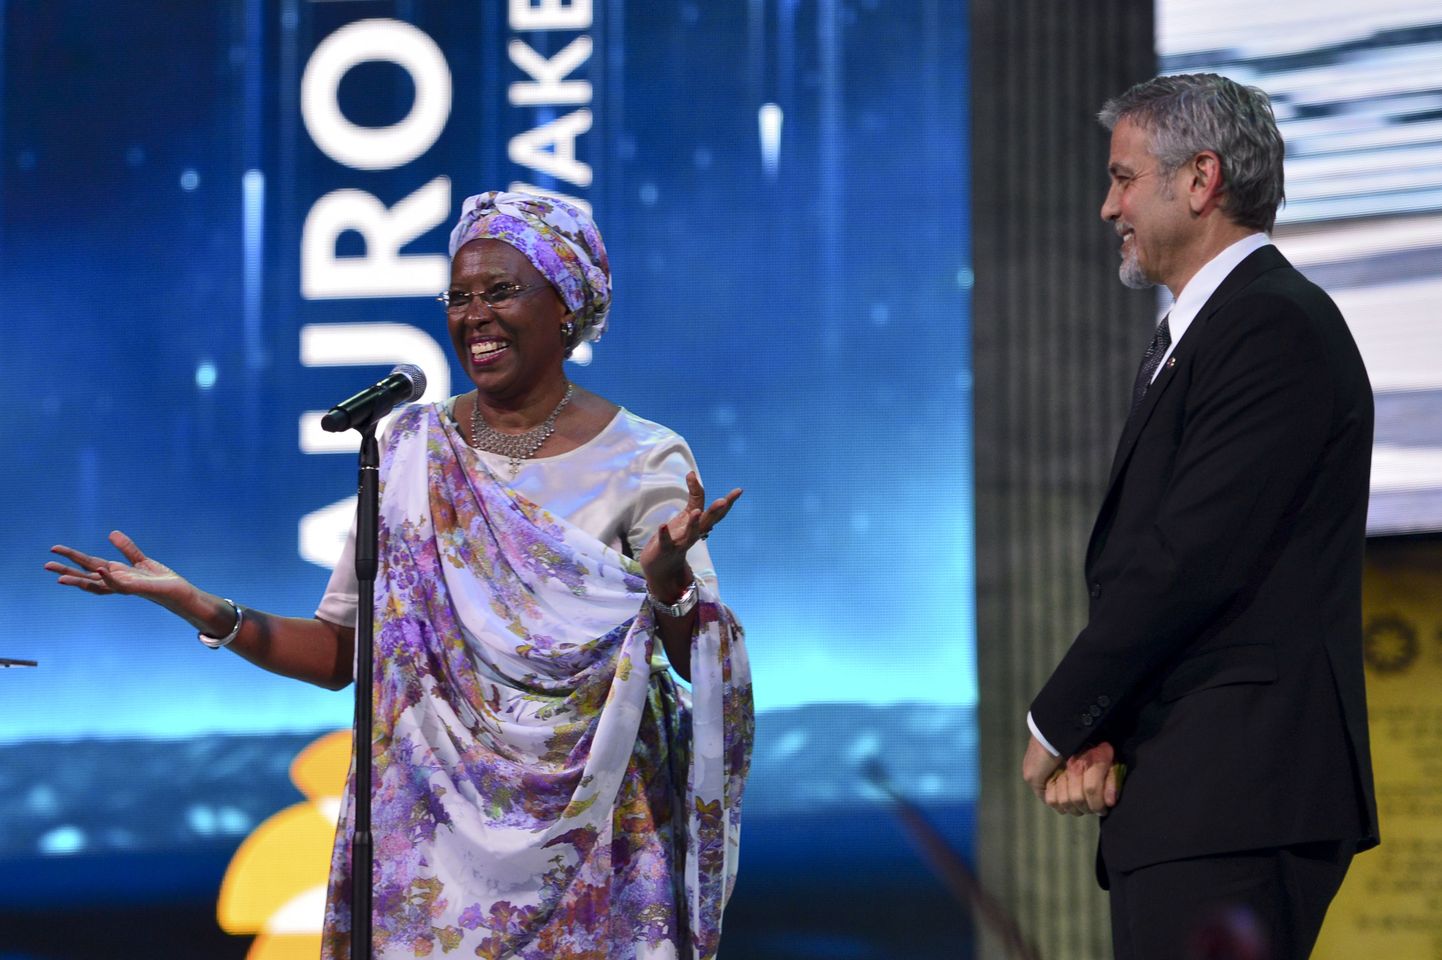 Eelmise Aurora auhinna laureaat Marguerite Barankitse ja näitleja George Clooney